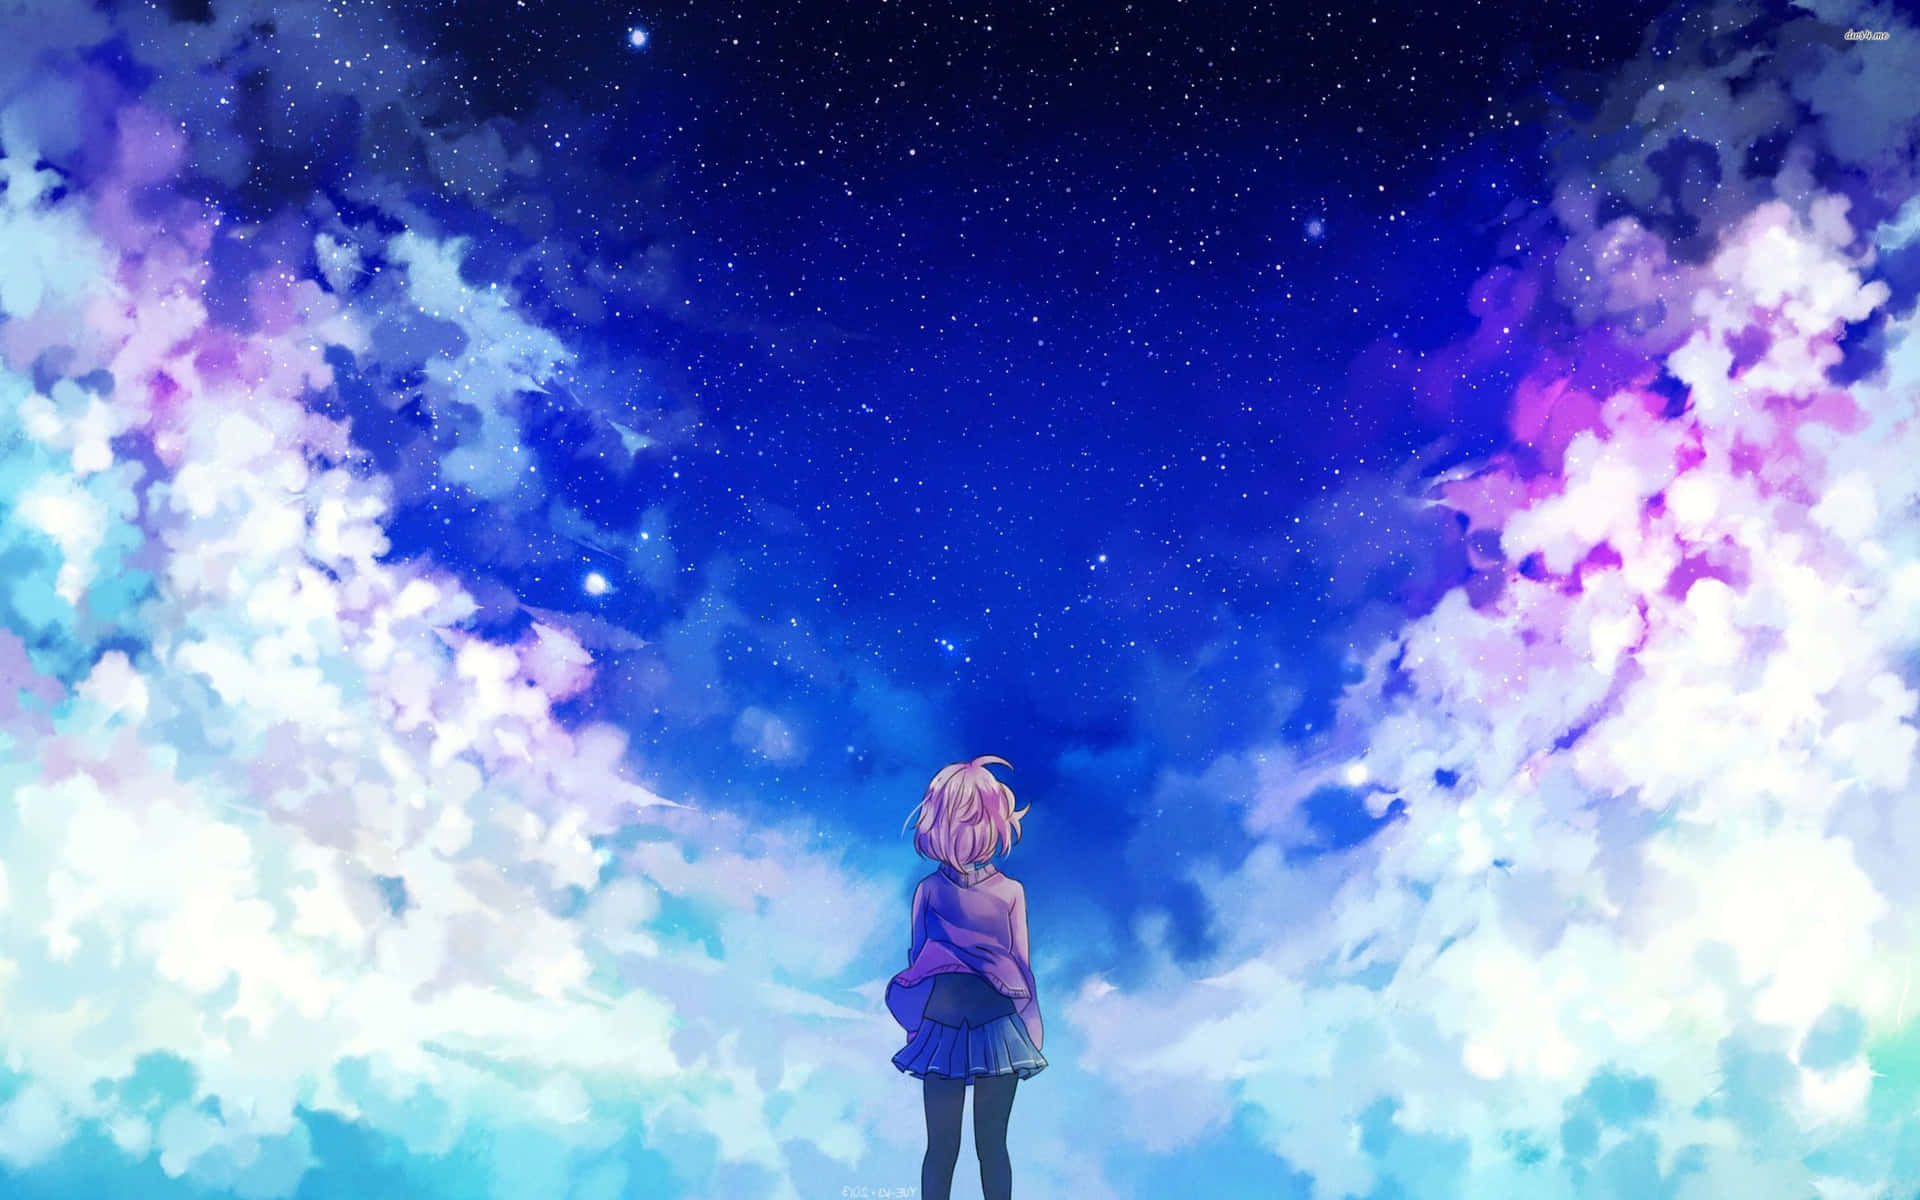 Modern anime blue aesthetic wallpaper for your desktop background Wallpaper